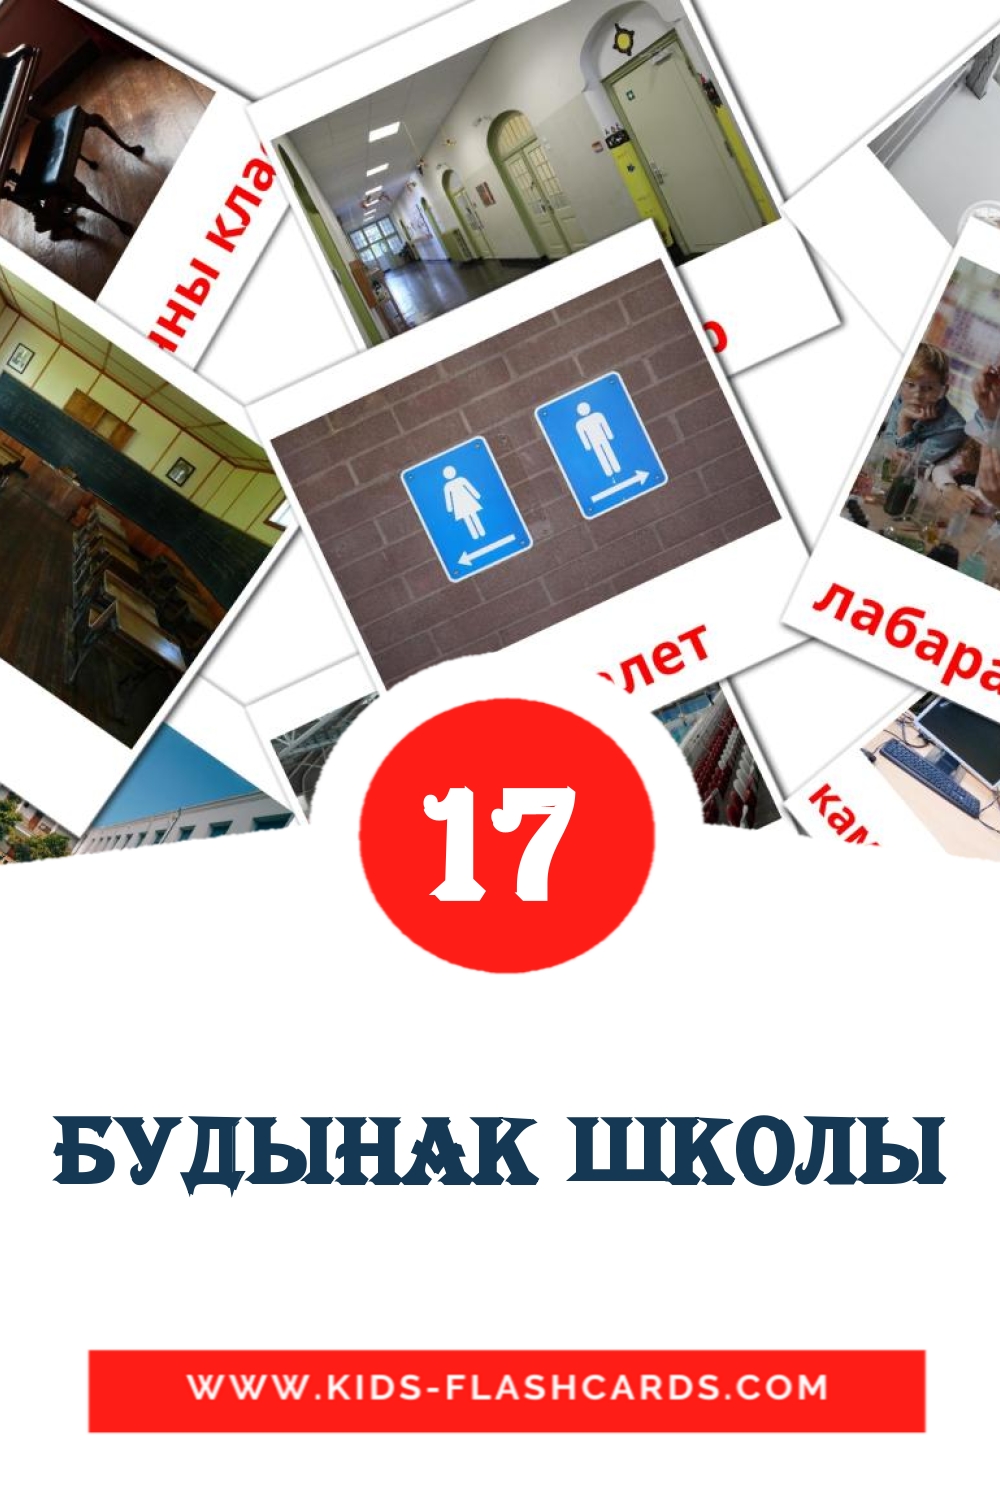 17 Будынак школы fotokaarten voor kleuters in het wit-russisch